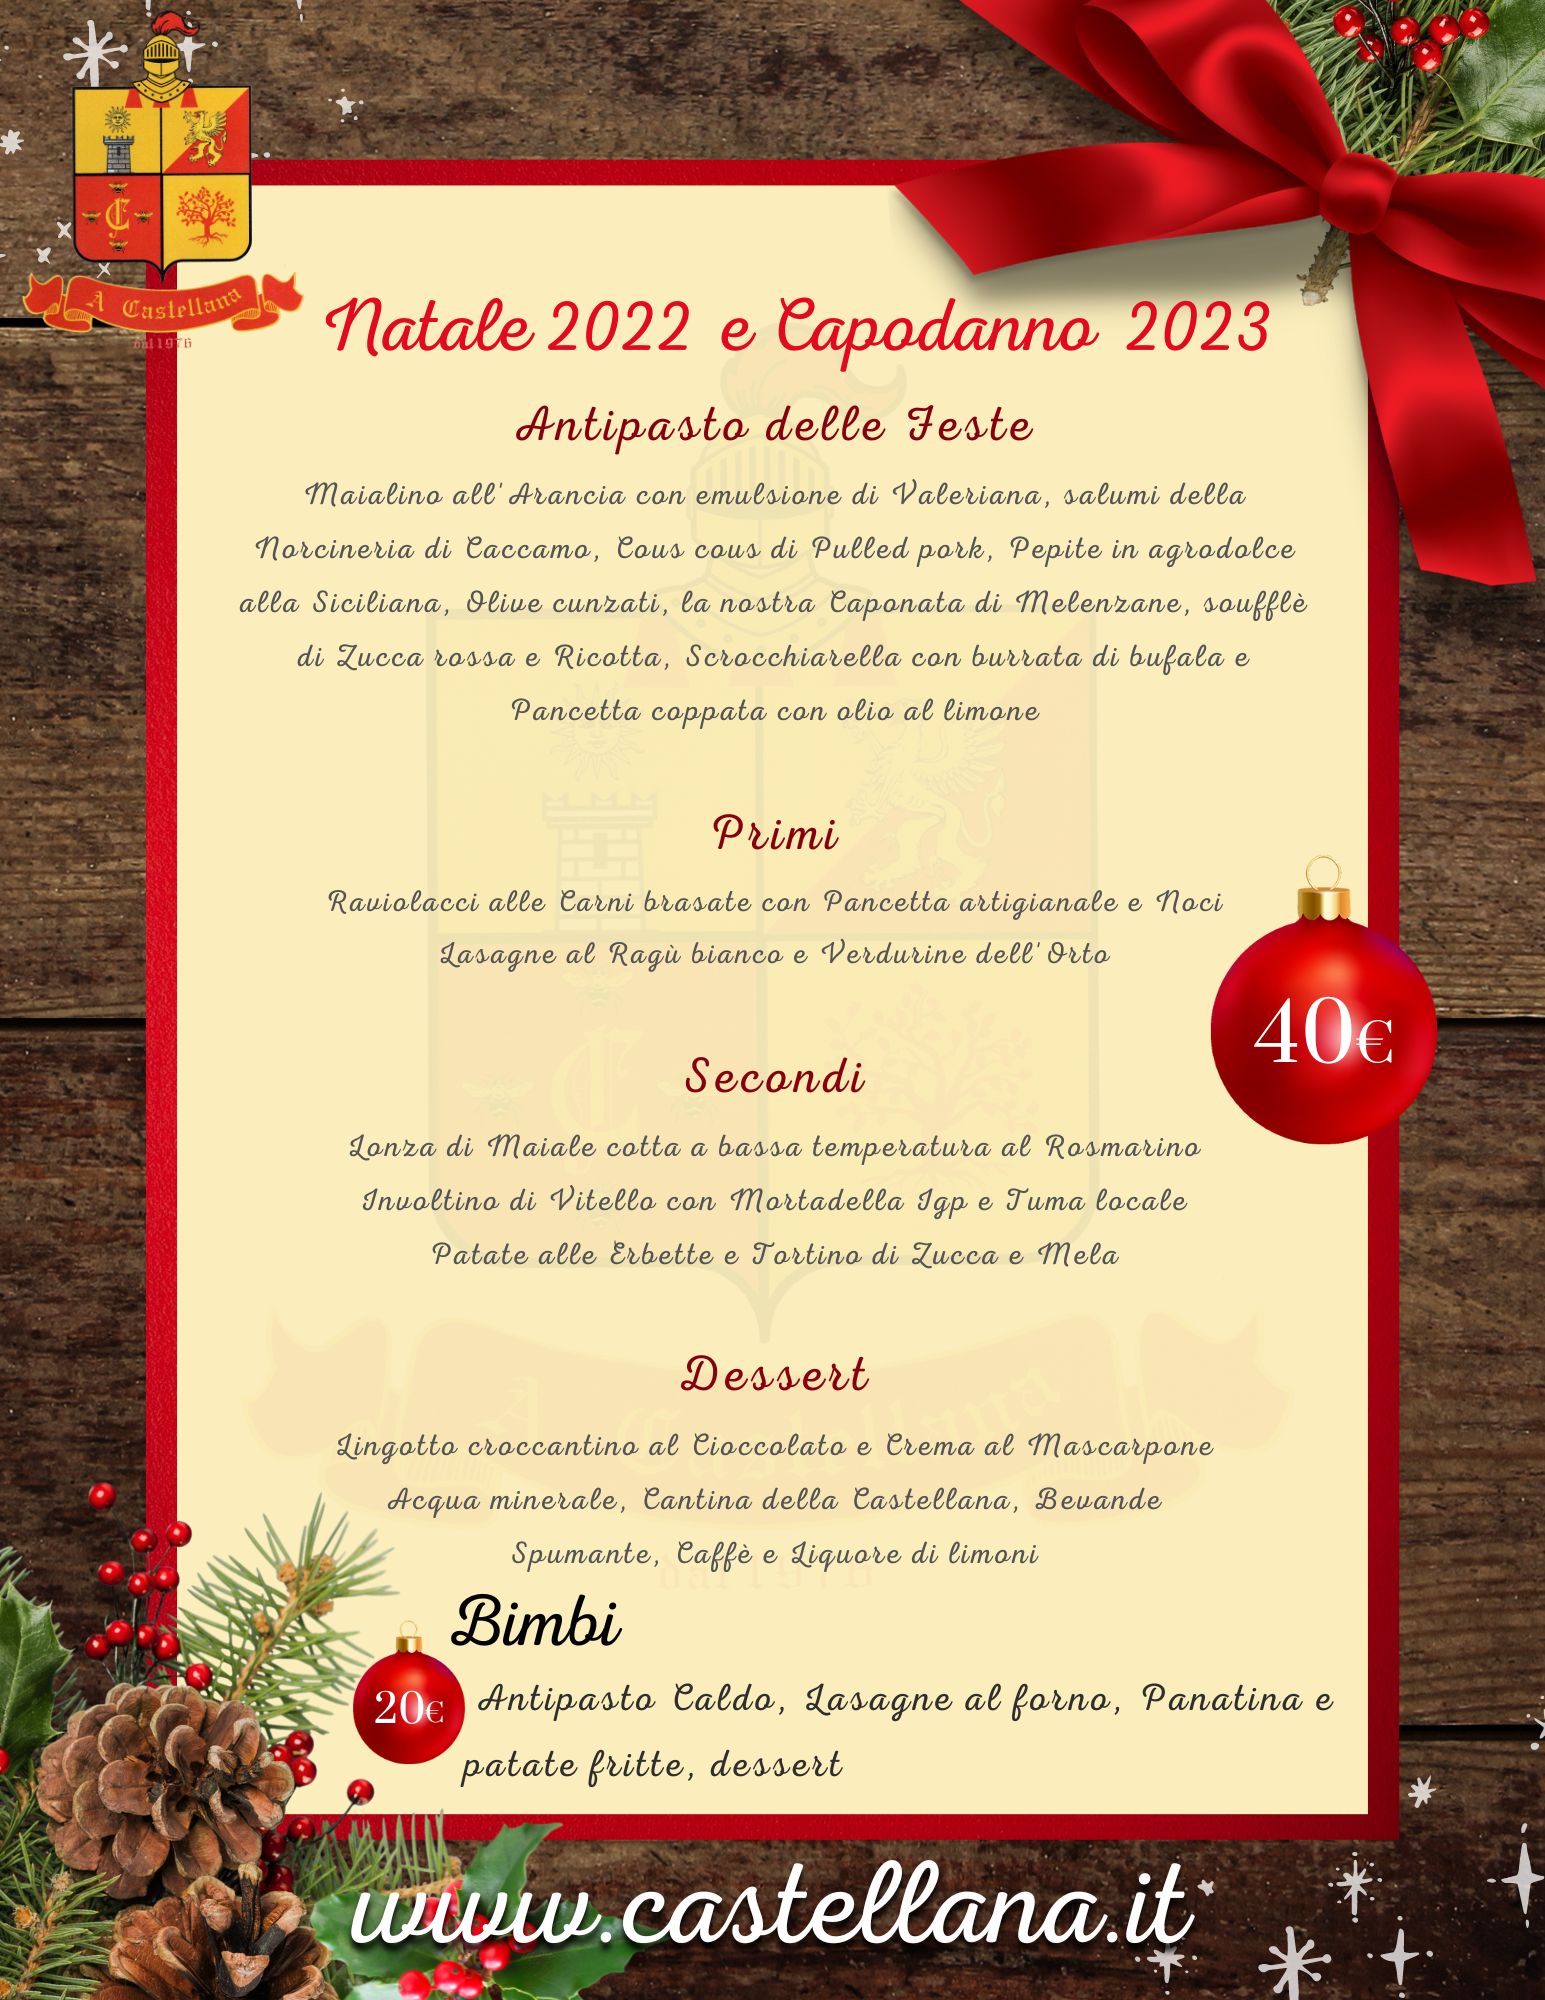 Natale e Capodanno 2022